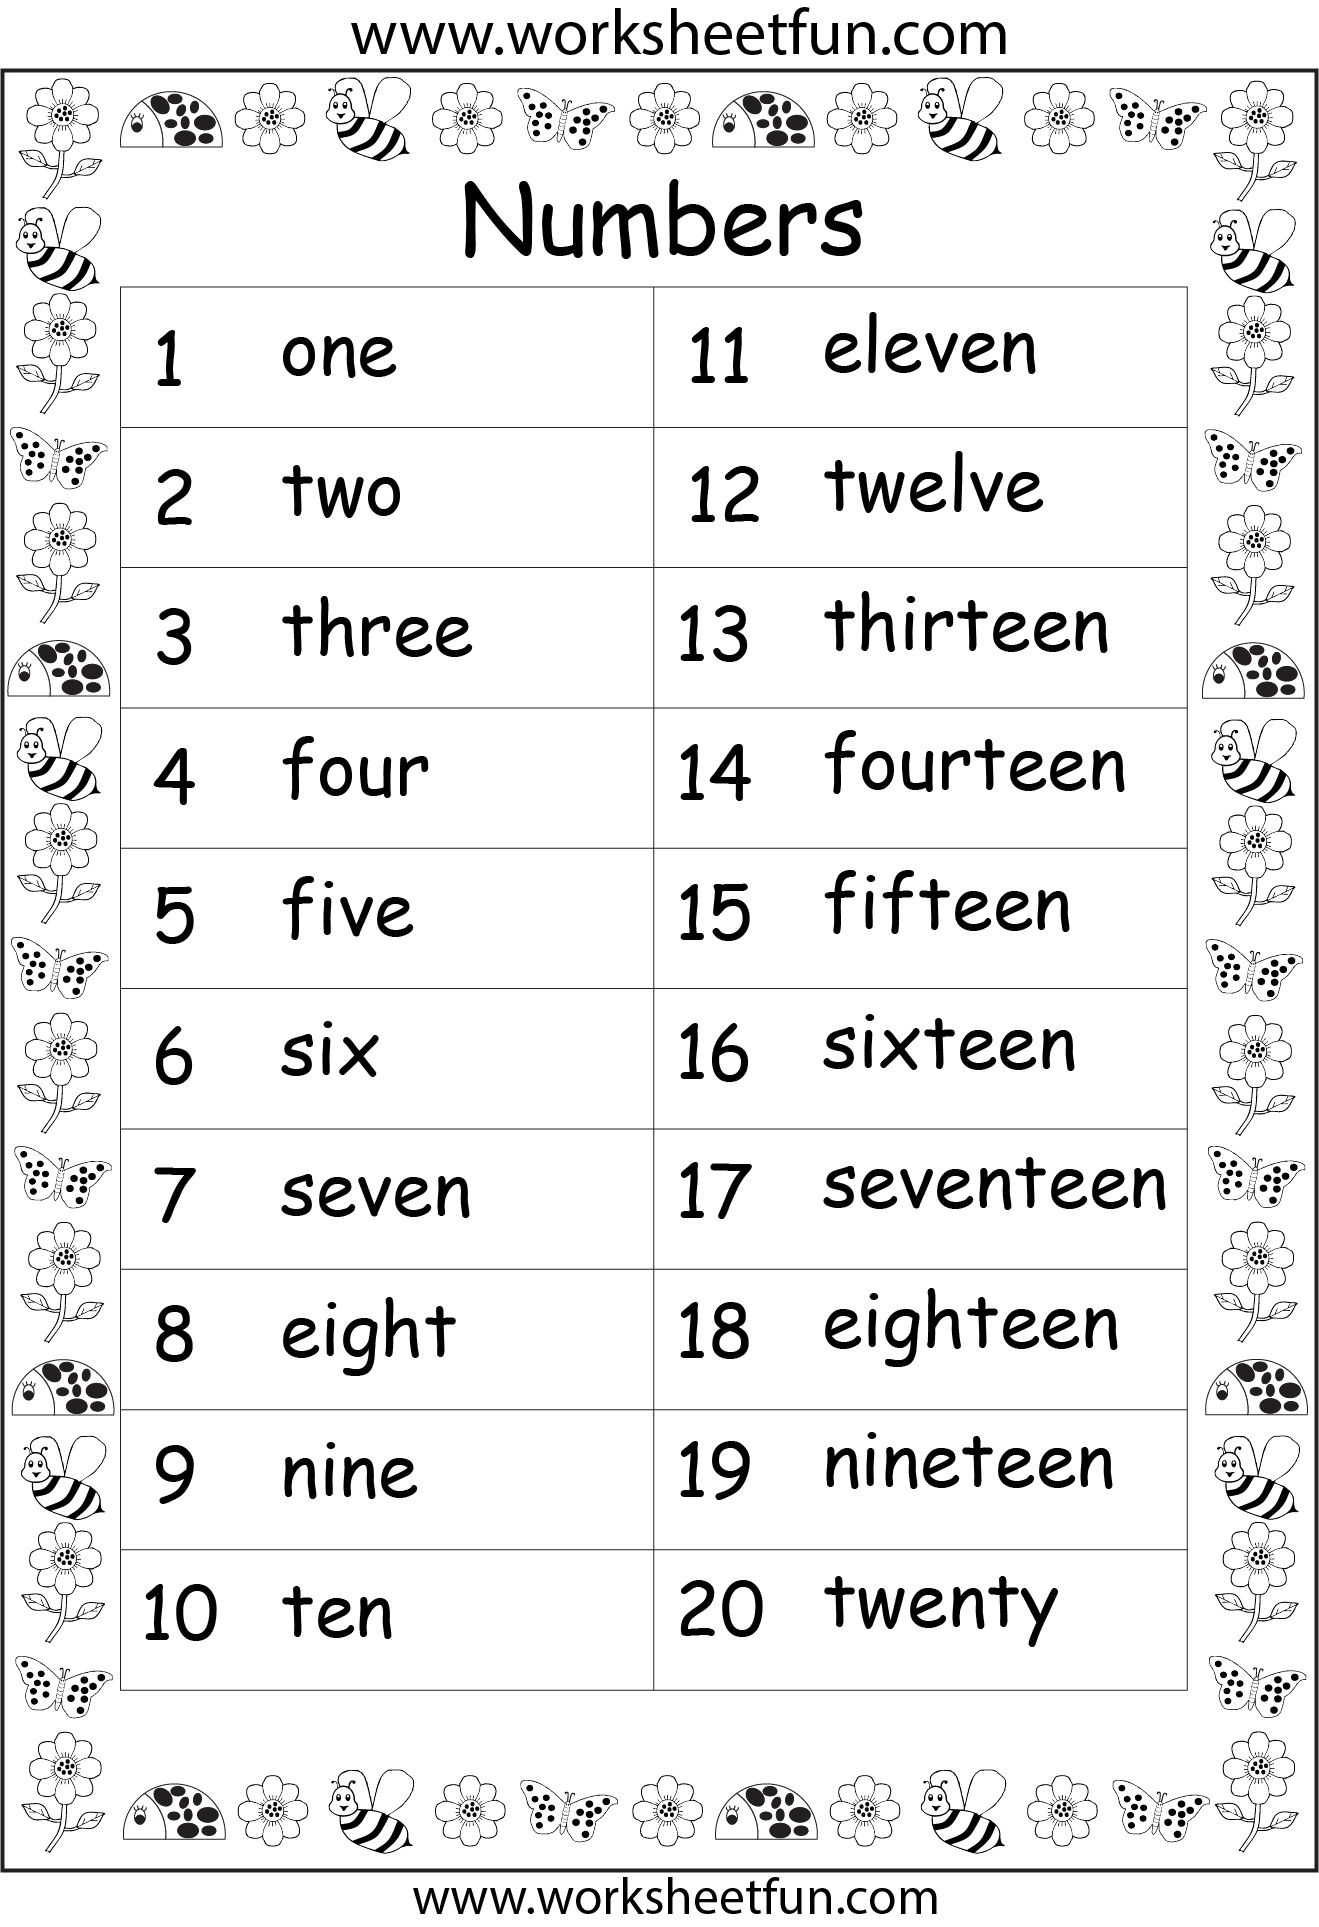 printable-number-words-worksheets